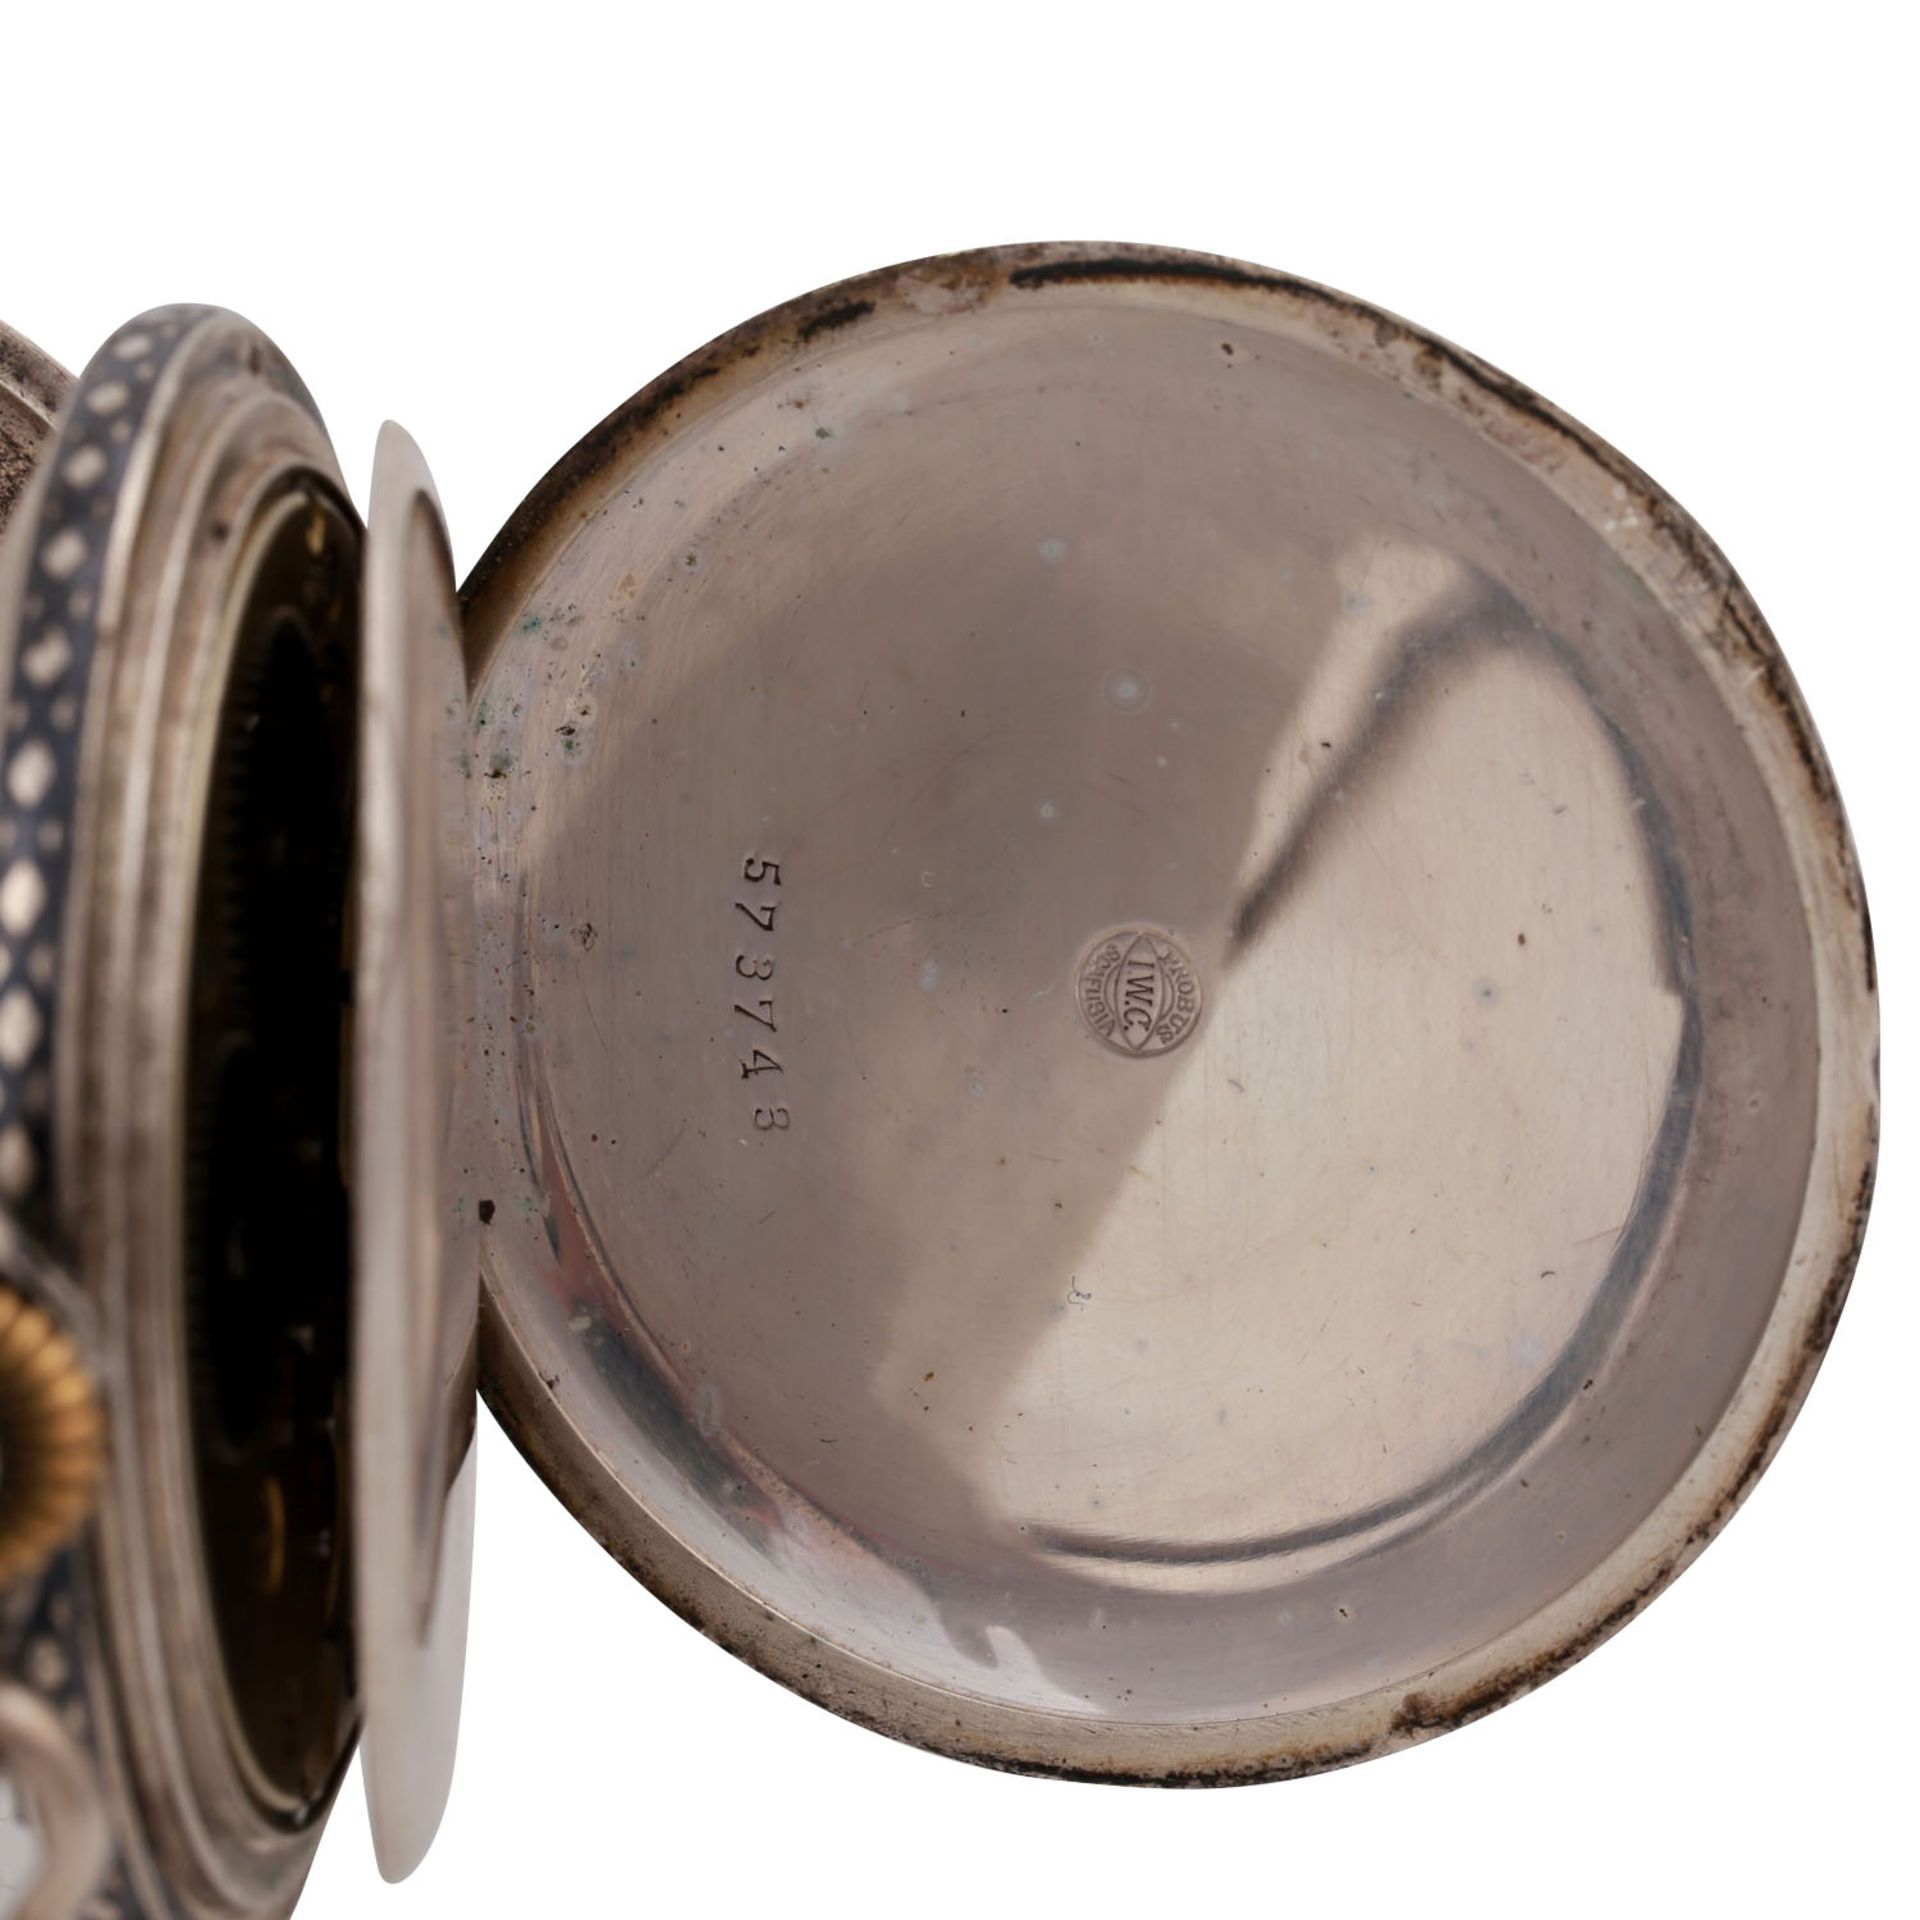 IWC Taschenuhr, ca. 1910-1915.Savonette-Gehäuse in Silber 800 (Niello). Weißes Email-Zifferblatt mit - Bild 6 aus 11